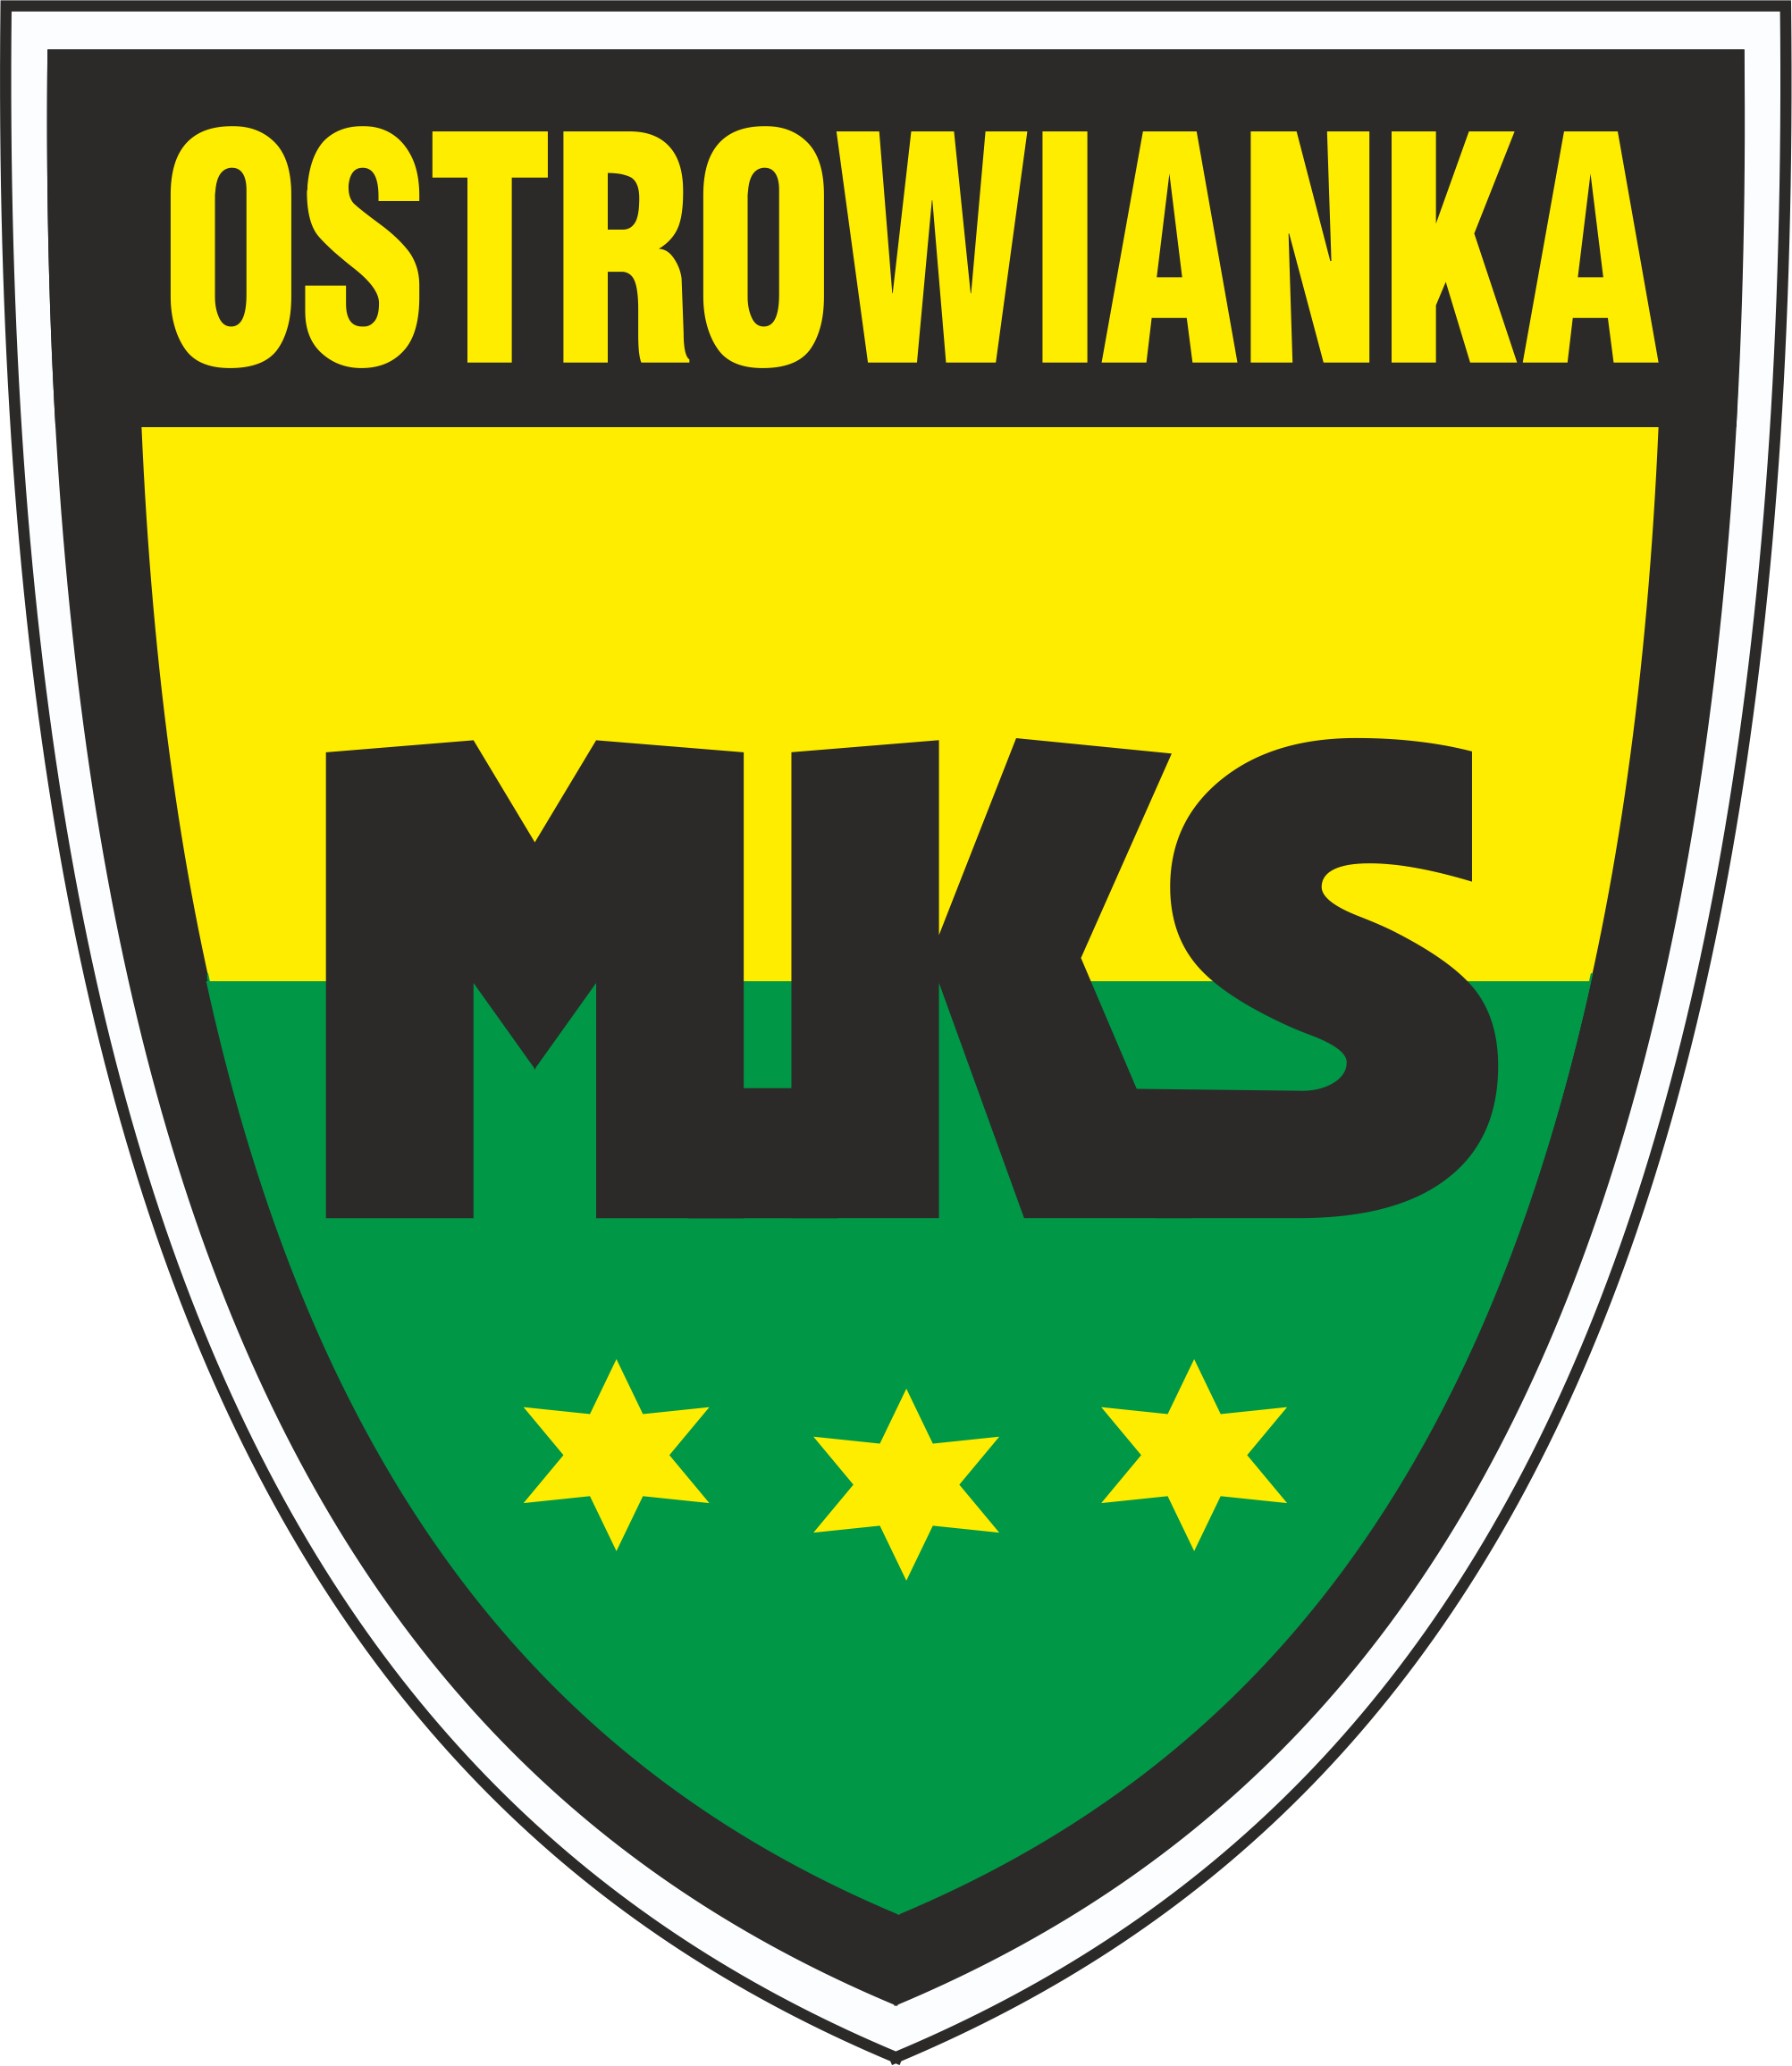 Logo MKS Ostrowianka